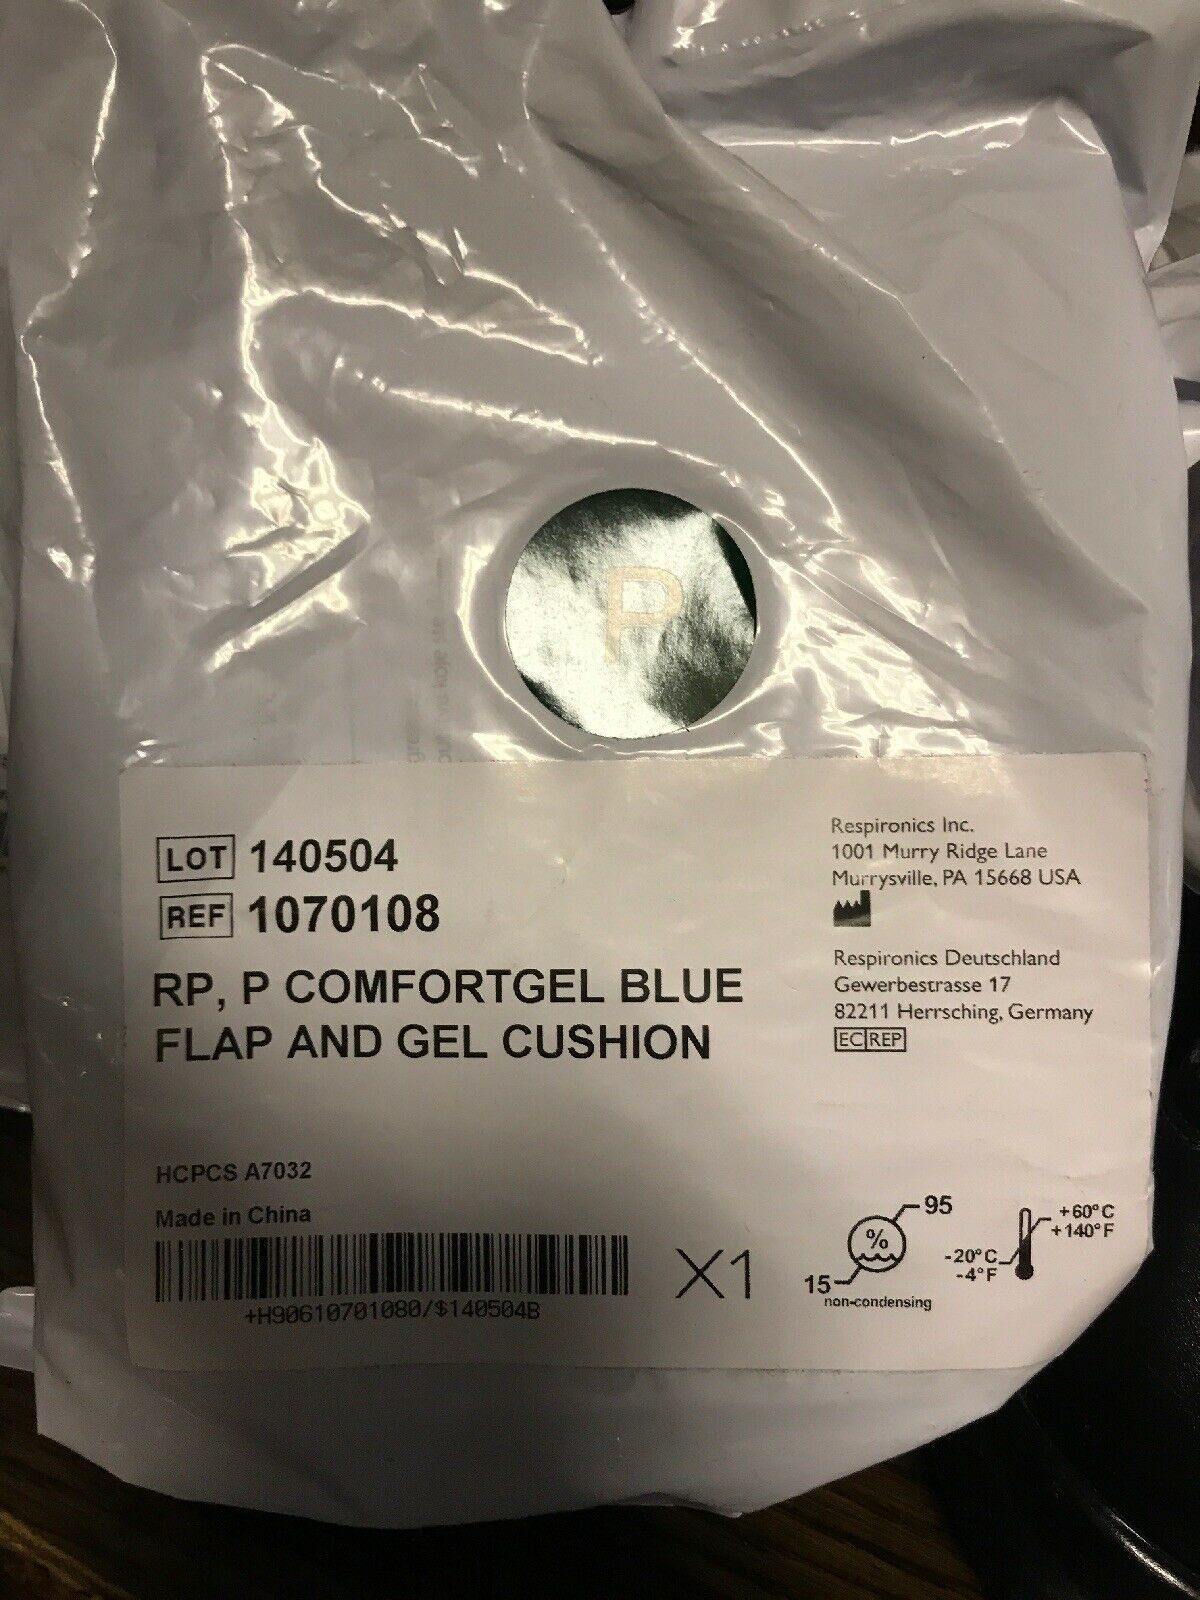 NEW Respironics ComfortGel Blue Flap and Gel Cushion 1070108 Petite Lot of 4 - $31.68